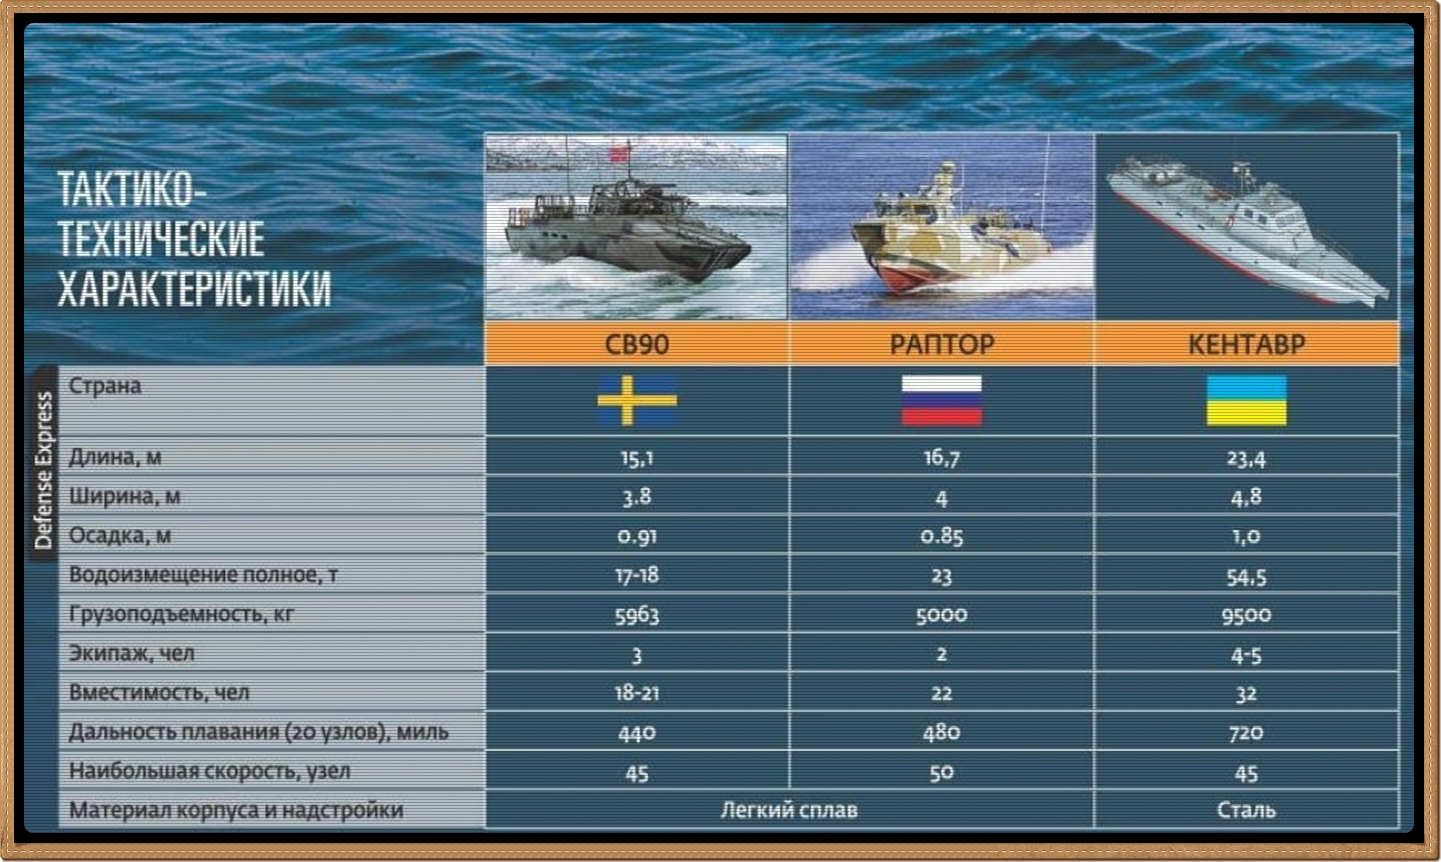 Моторные лодки и катера российского производства — обзор производителей